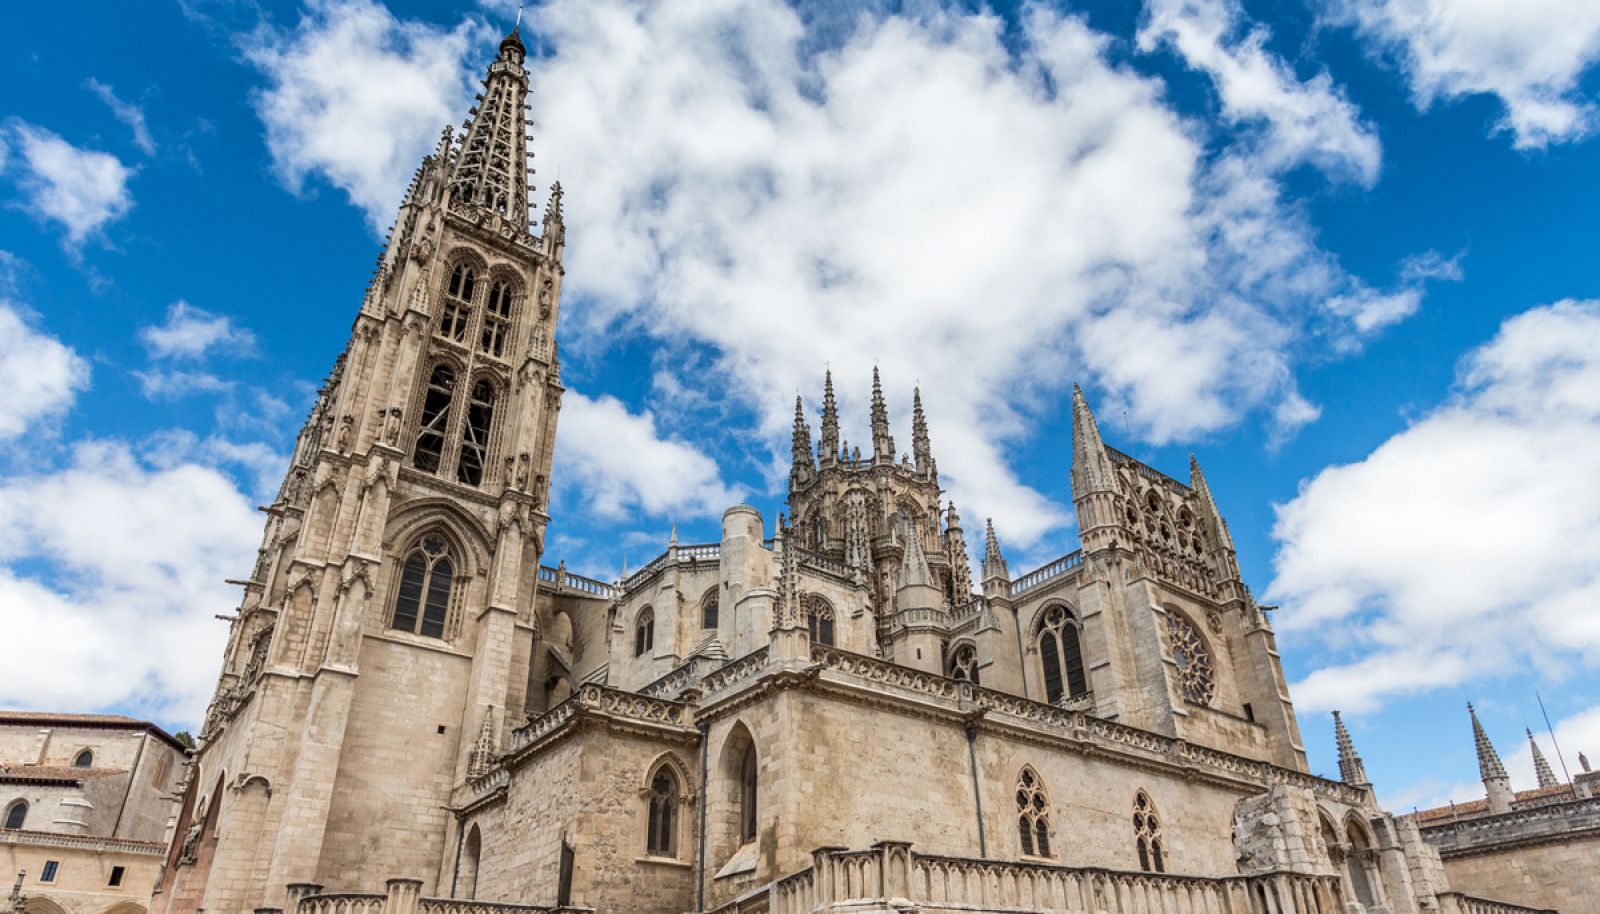 Imagen de la catedral de Burgos, declarada Patrimonio de la Humanidad por la UNESCO en 1984.